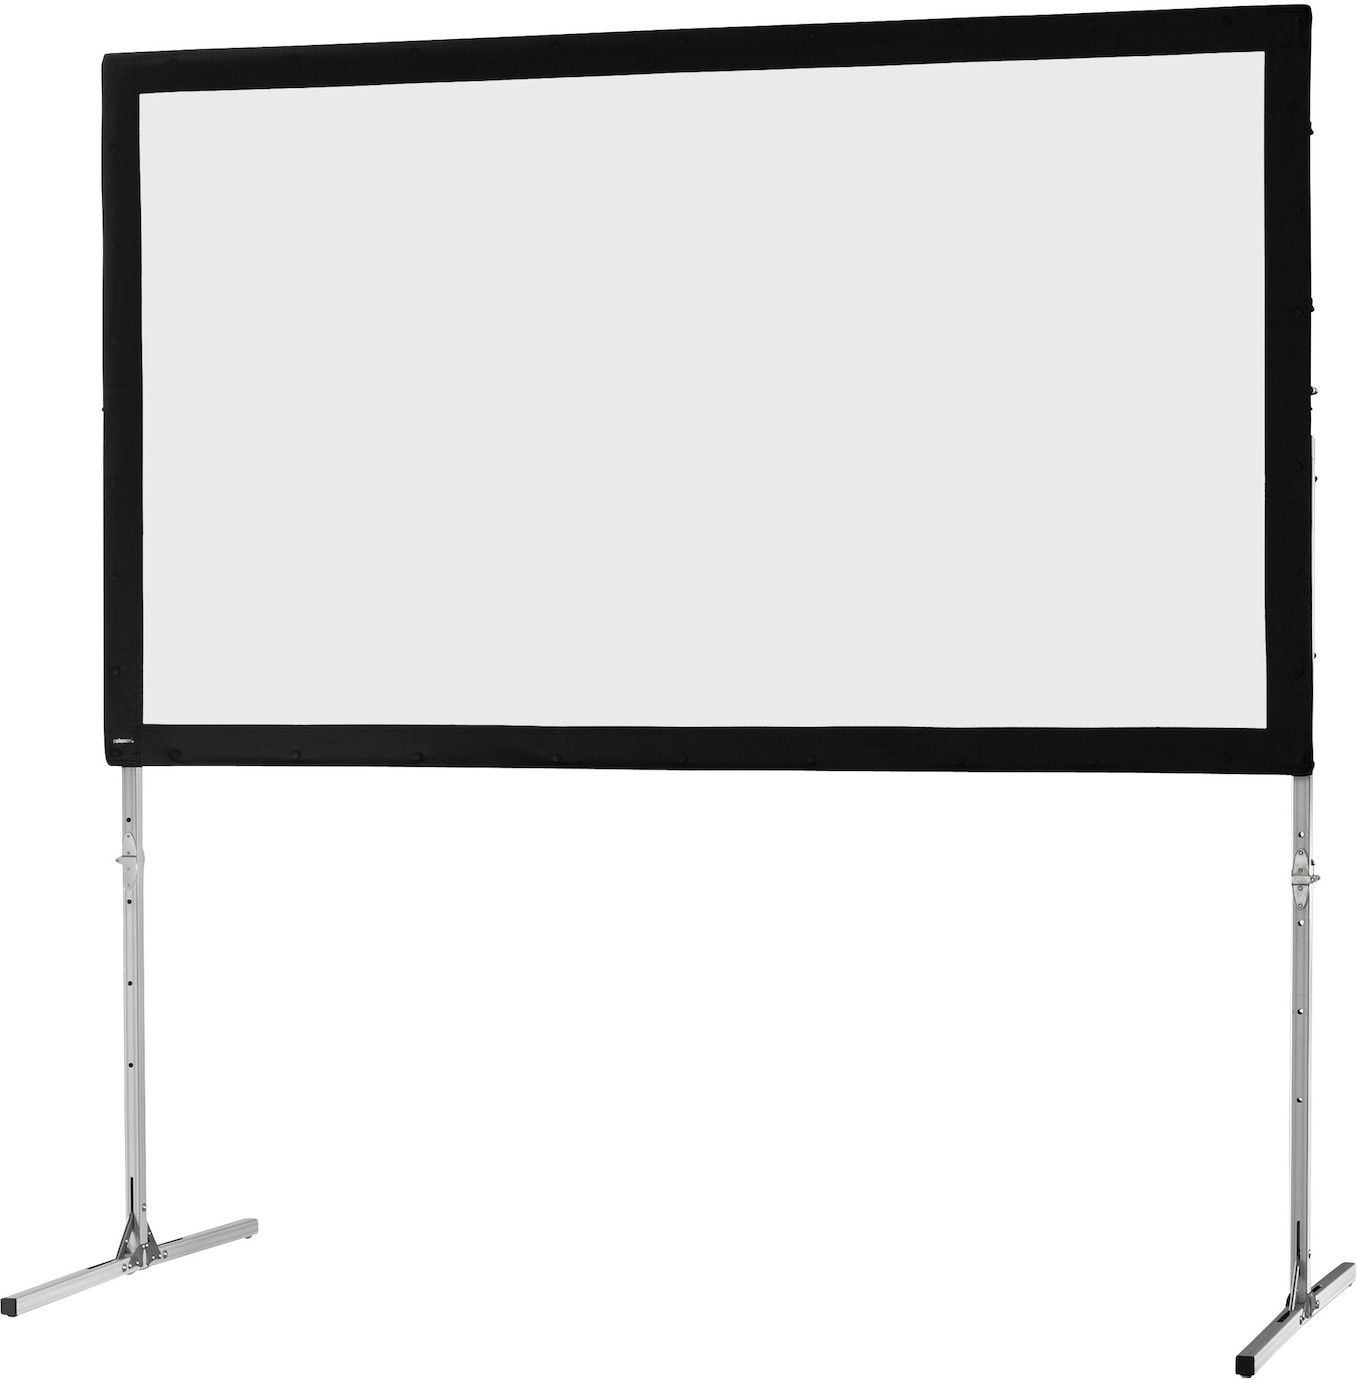 Ecran de projection sur cadre celexon « Mobil Expert » 244 x 137 cm, projection de face